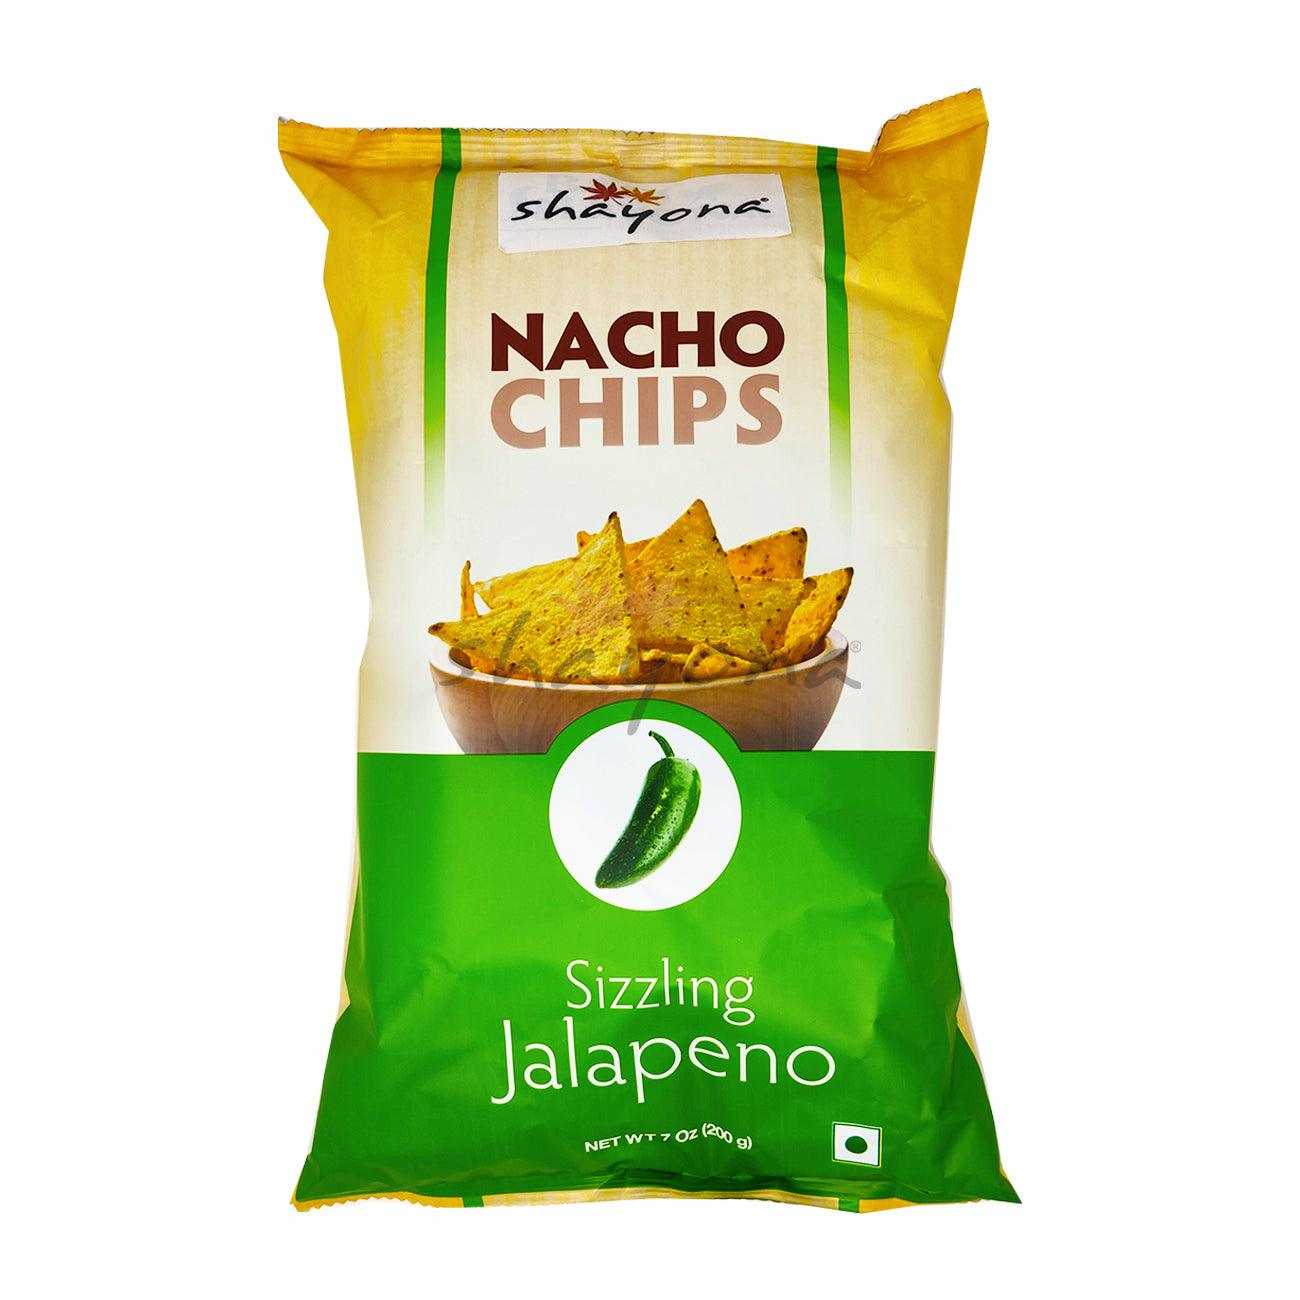 Shayona Nacho Chips Sizzling Jalapeno